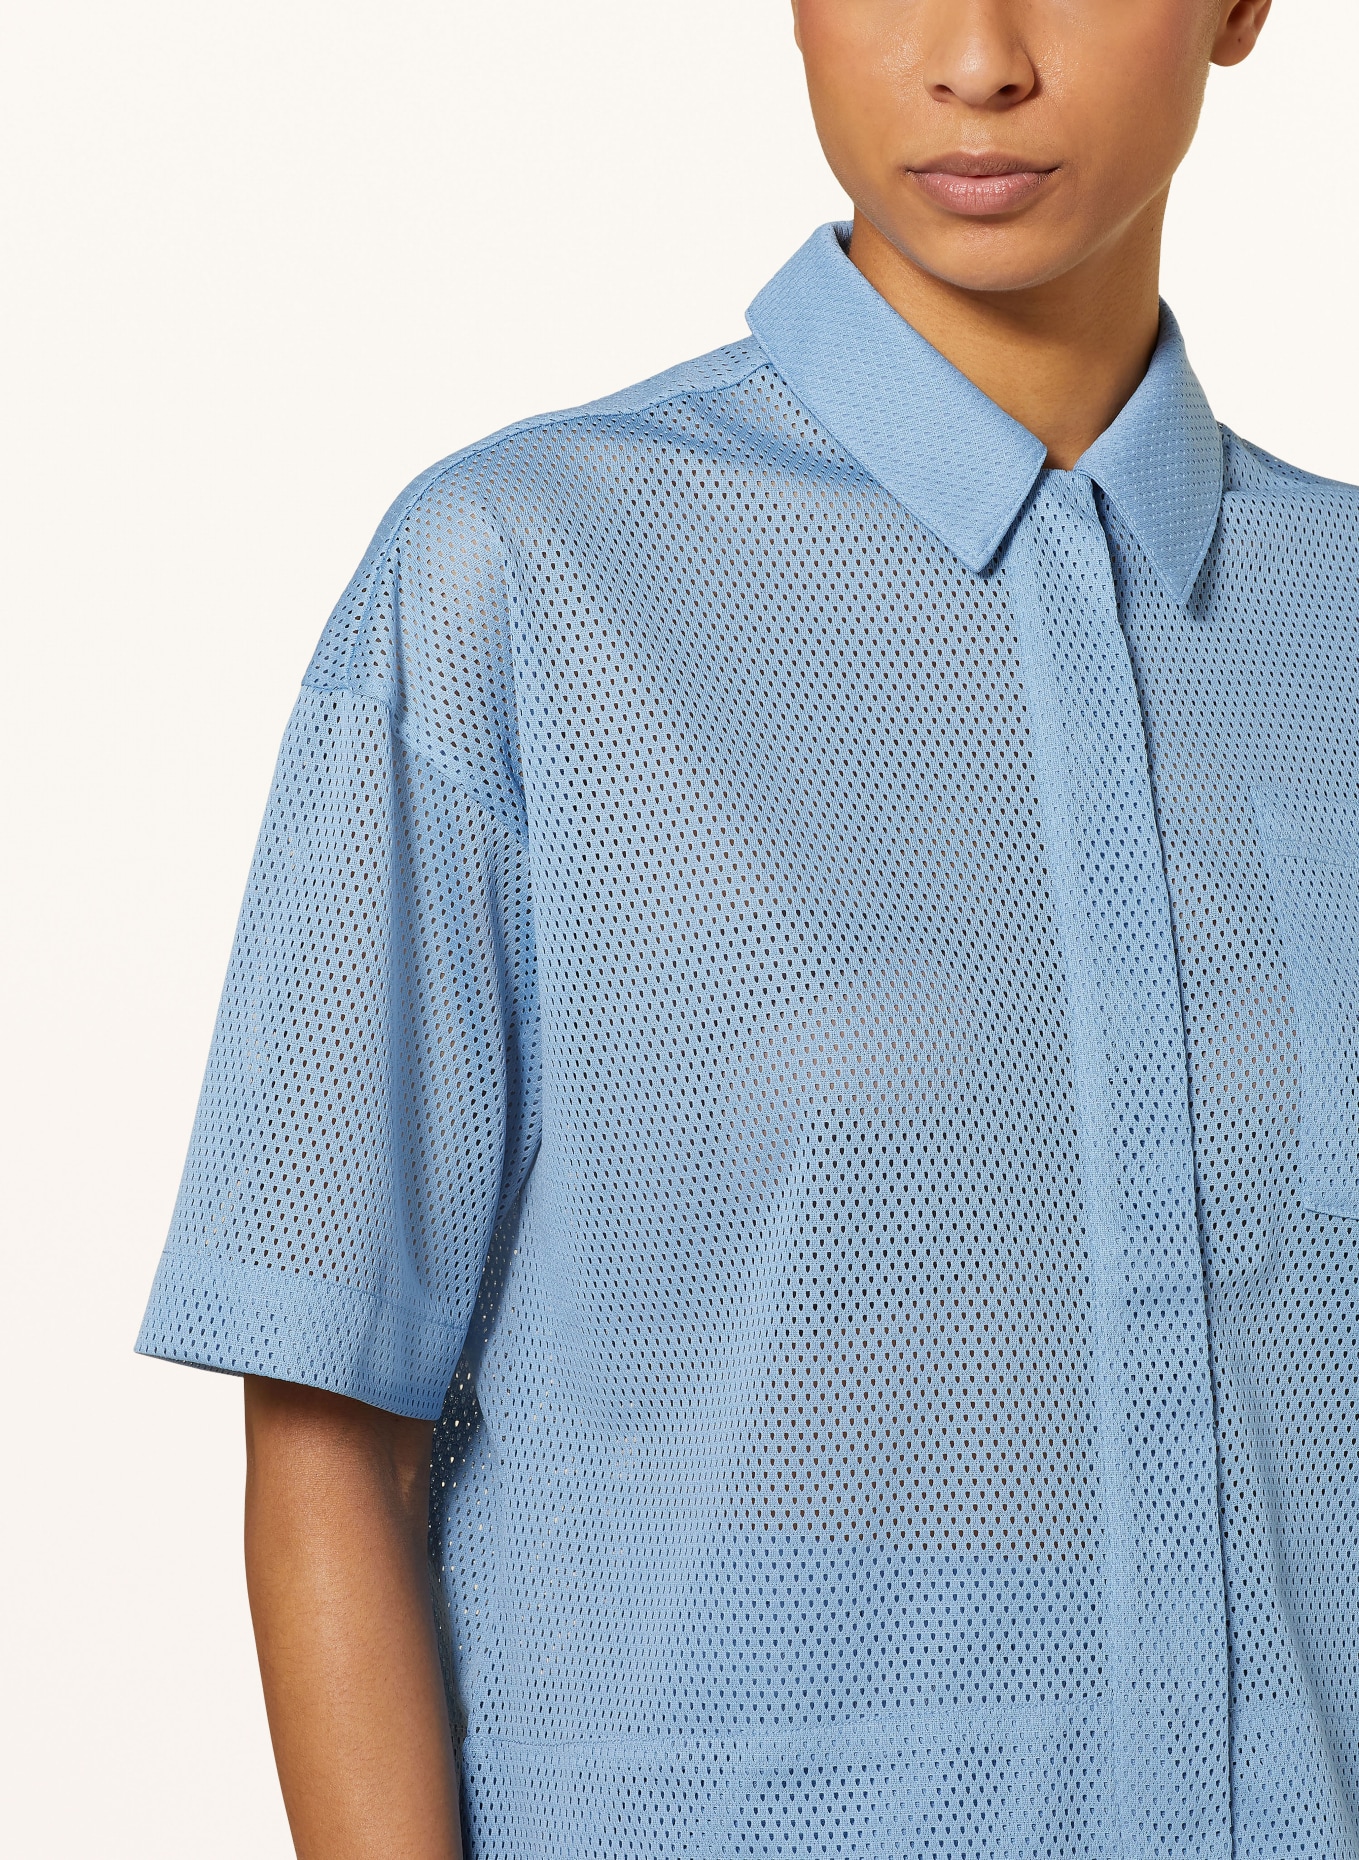 TheJoggConcept Shirt blouse JCTALLI, Color: BLUE (Image 4)